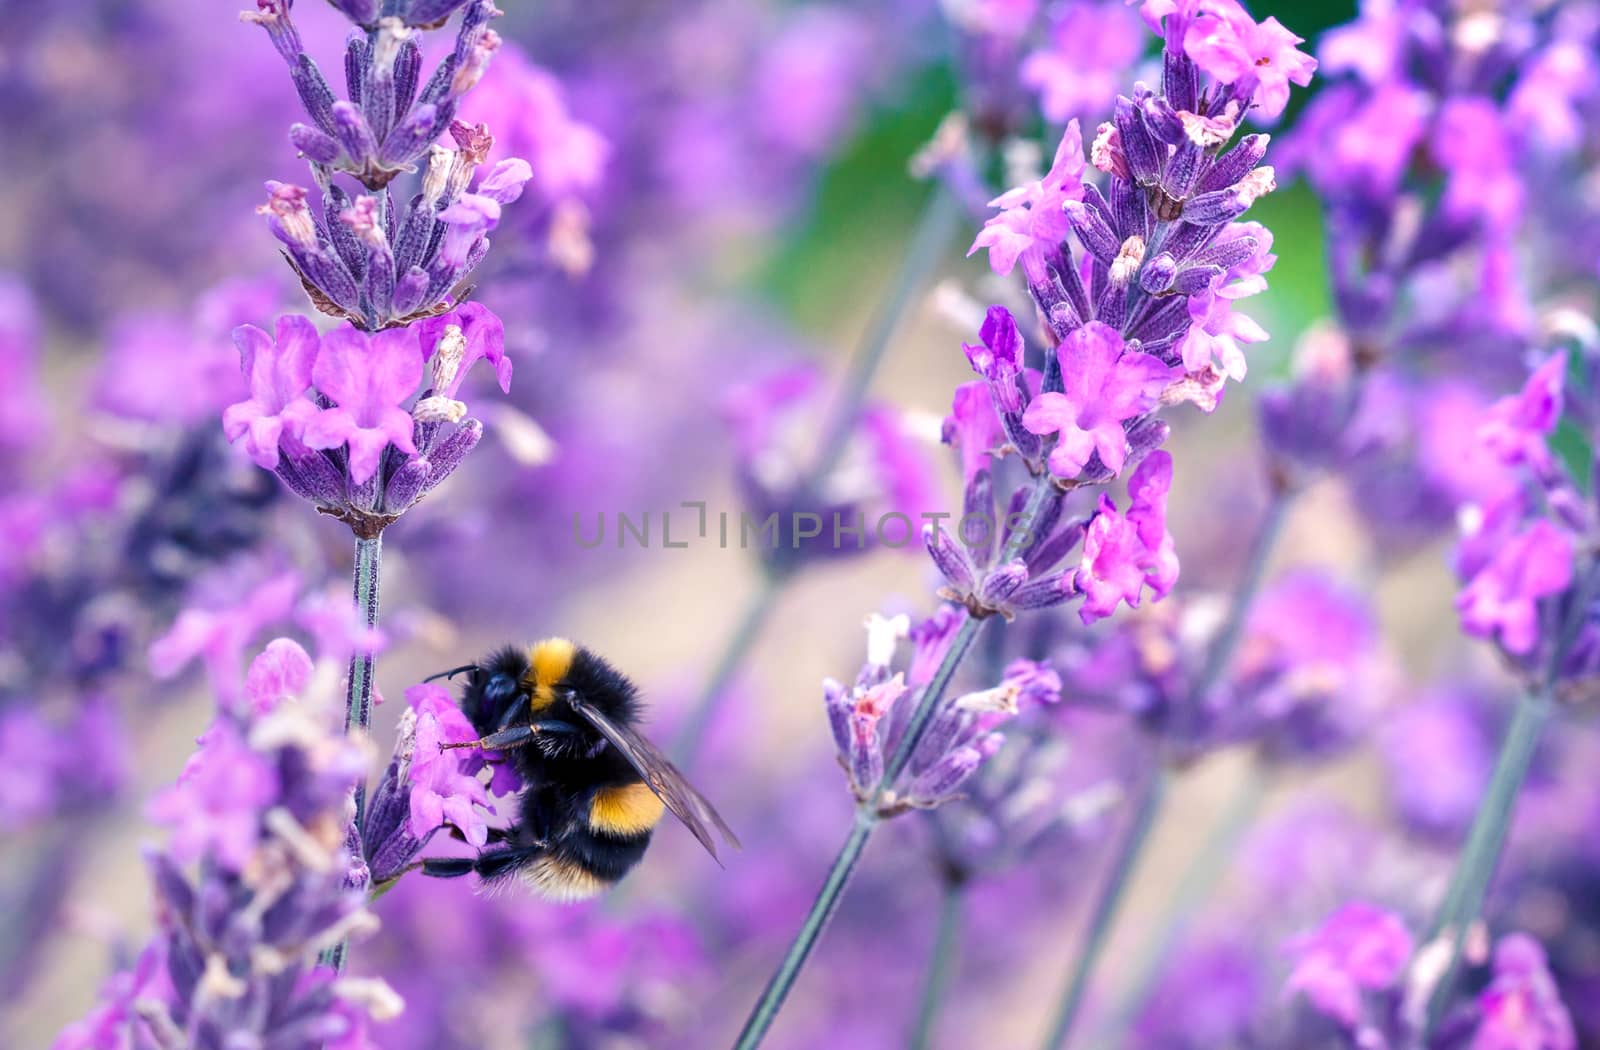 Bee pollinating herbal lavender flowers in a field by magicbones